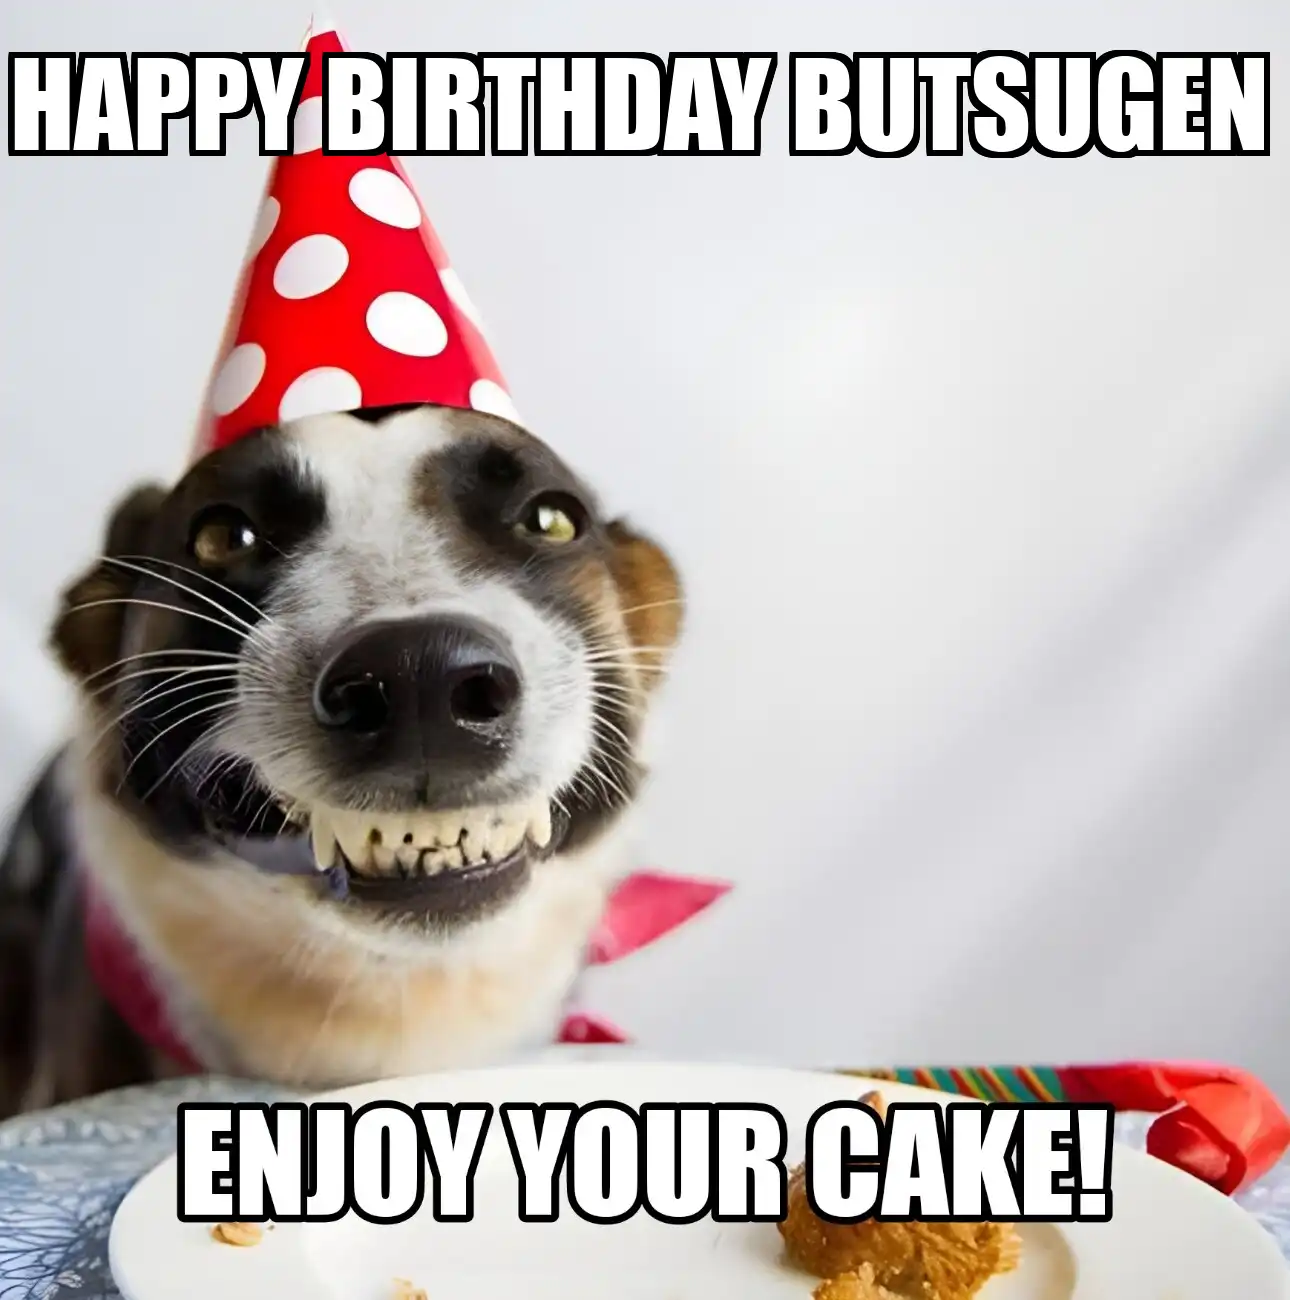 Happy Birthday Butsugen Enjoy Your Cake Dog Meme